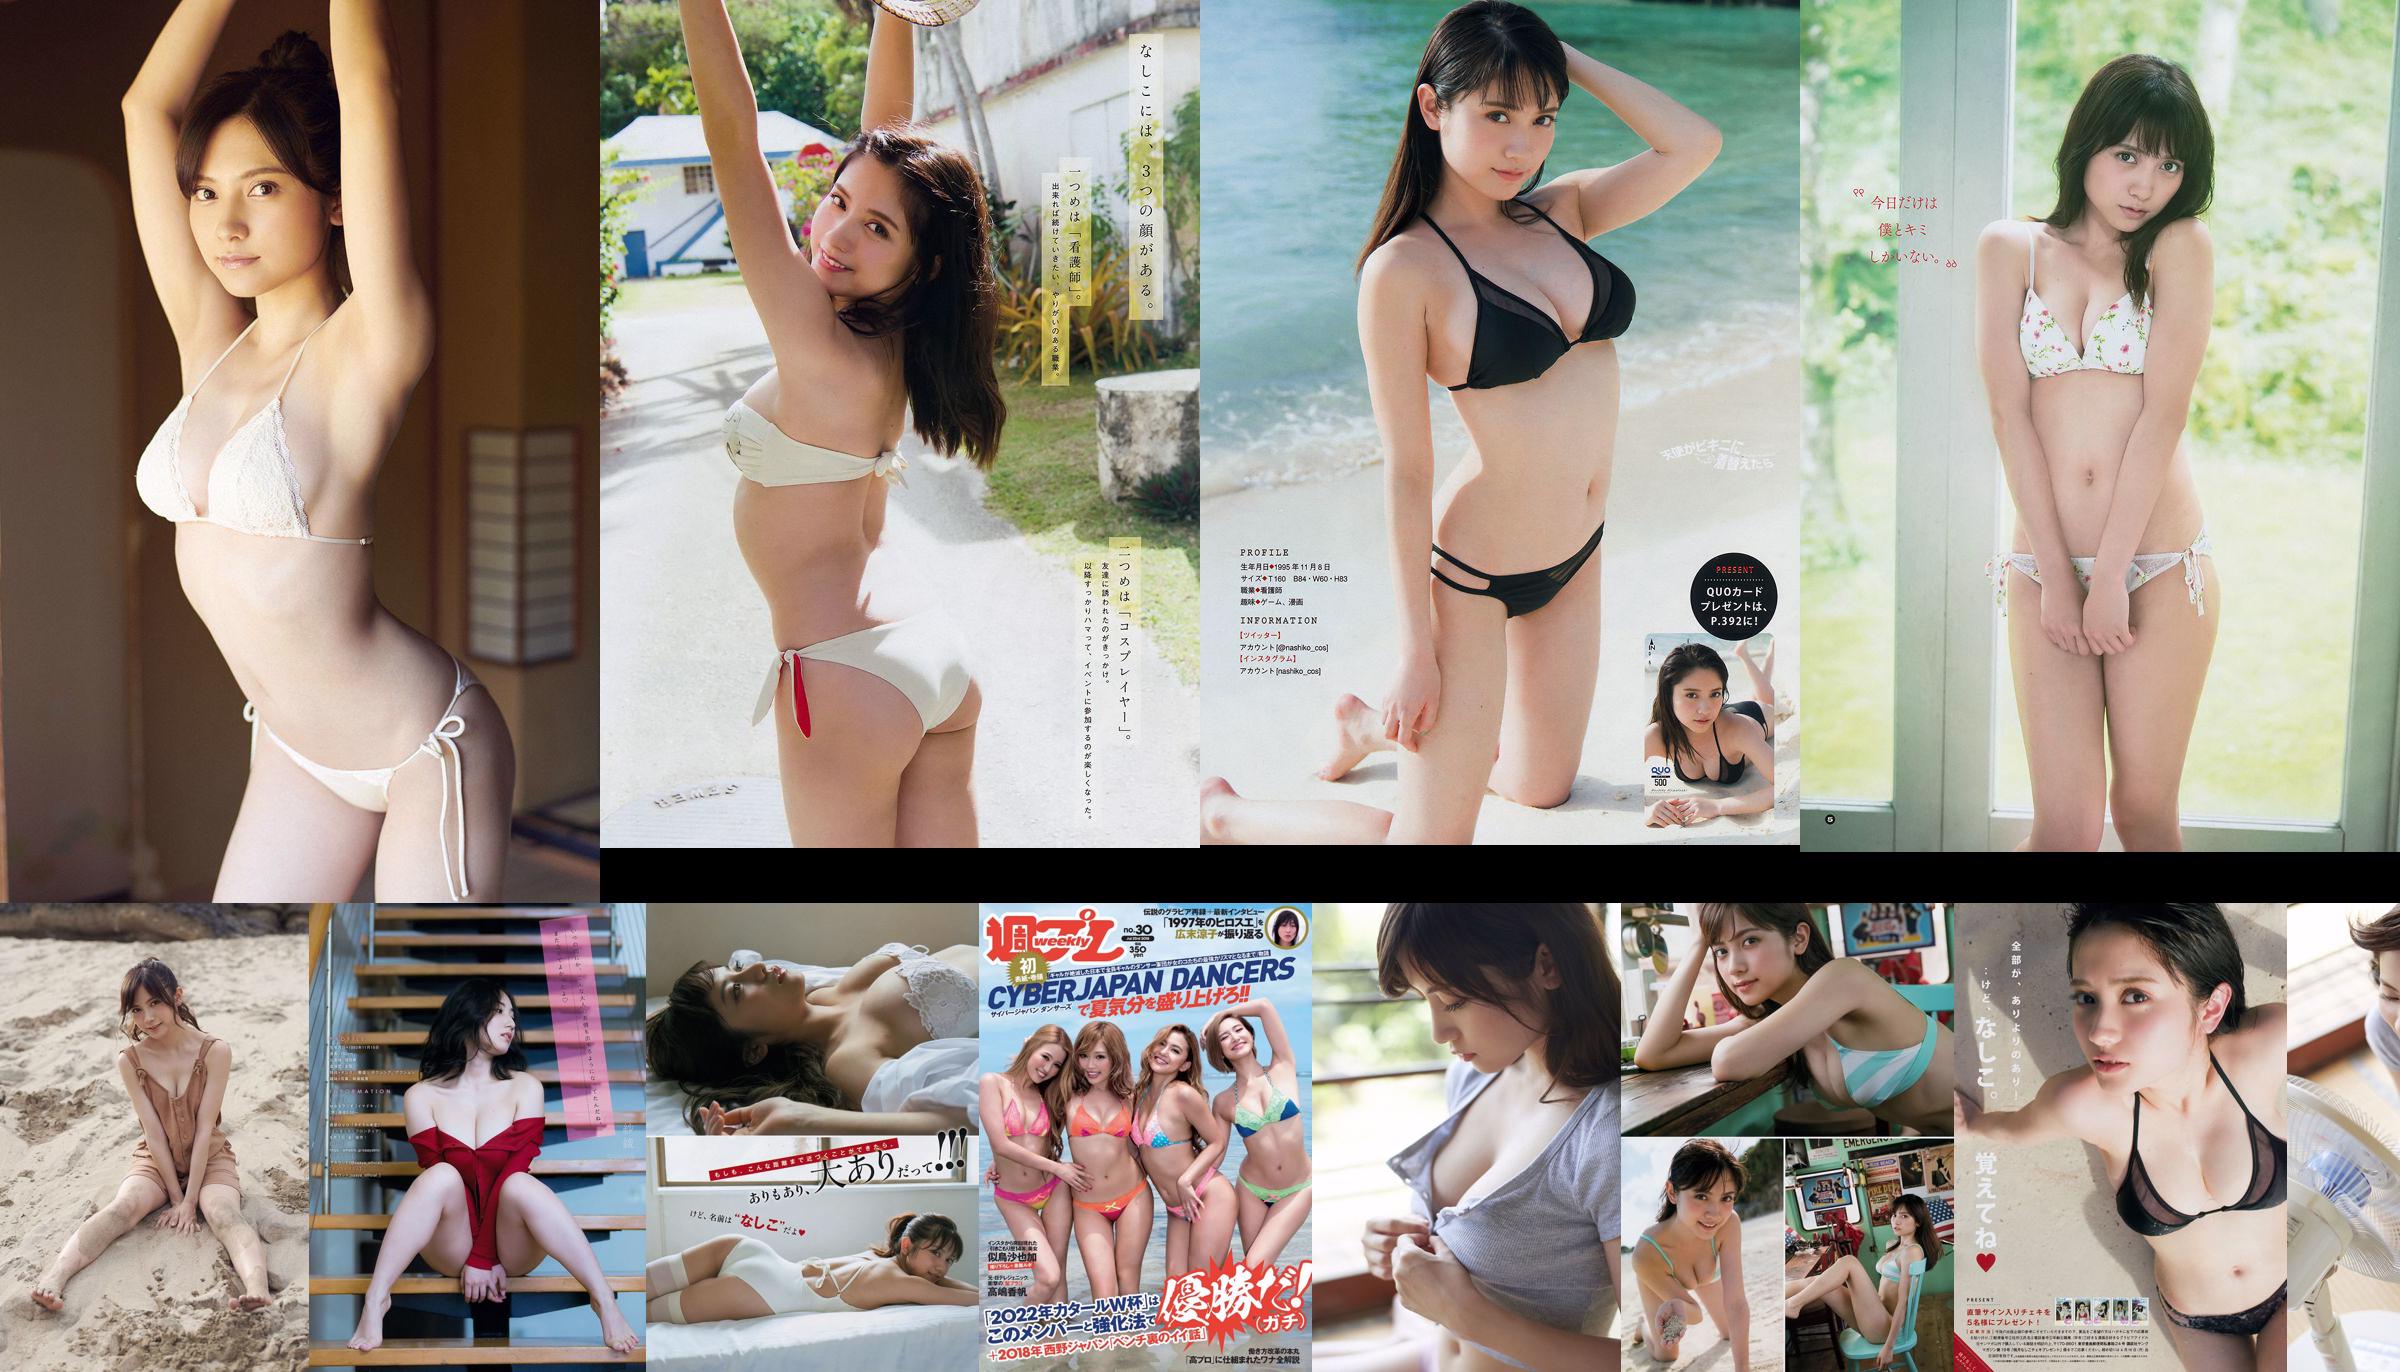 [Young Gangan] Nashiko Momotsuki Nashiko Saki, Rena Kuroki 2018, foto nº 19 No.28d0e4 Página 1